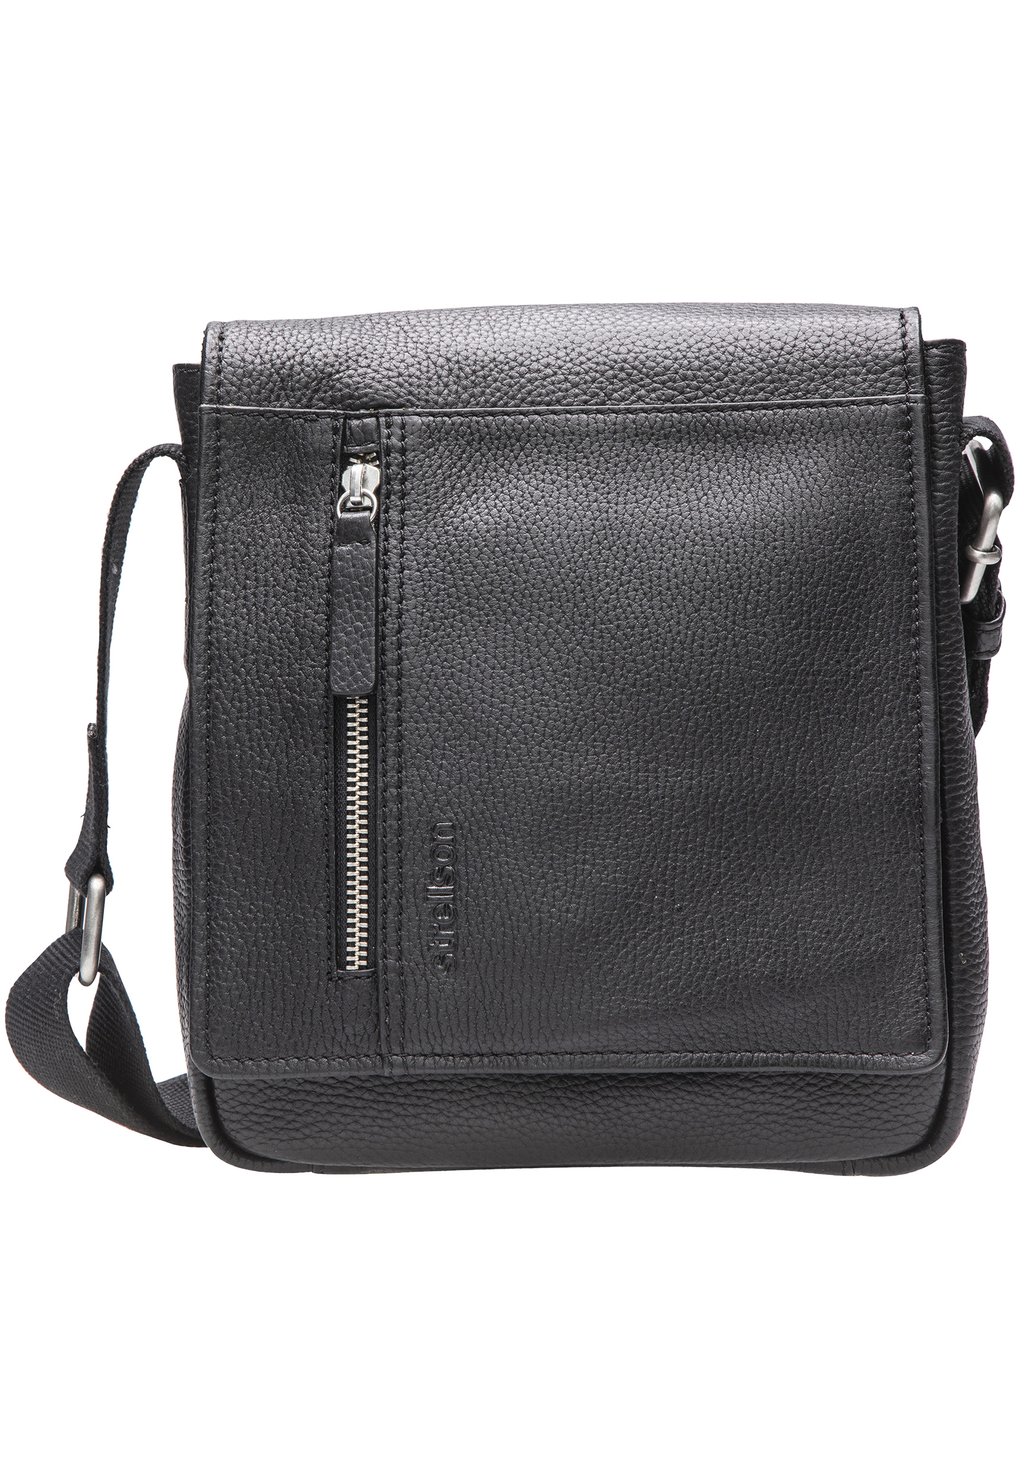 Сумка через плечо Strellson Premium, цвет black сумка через плечо strellson premium цвет darkgrey